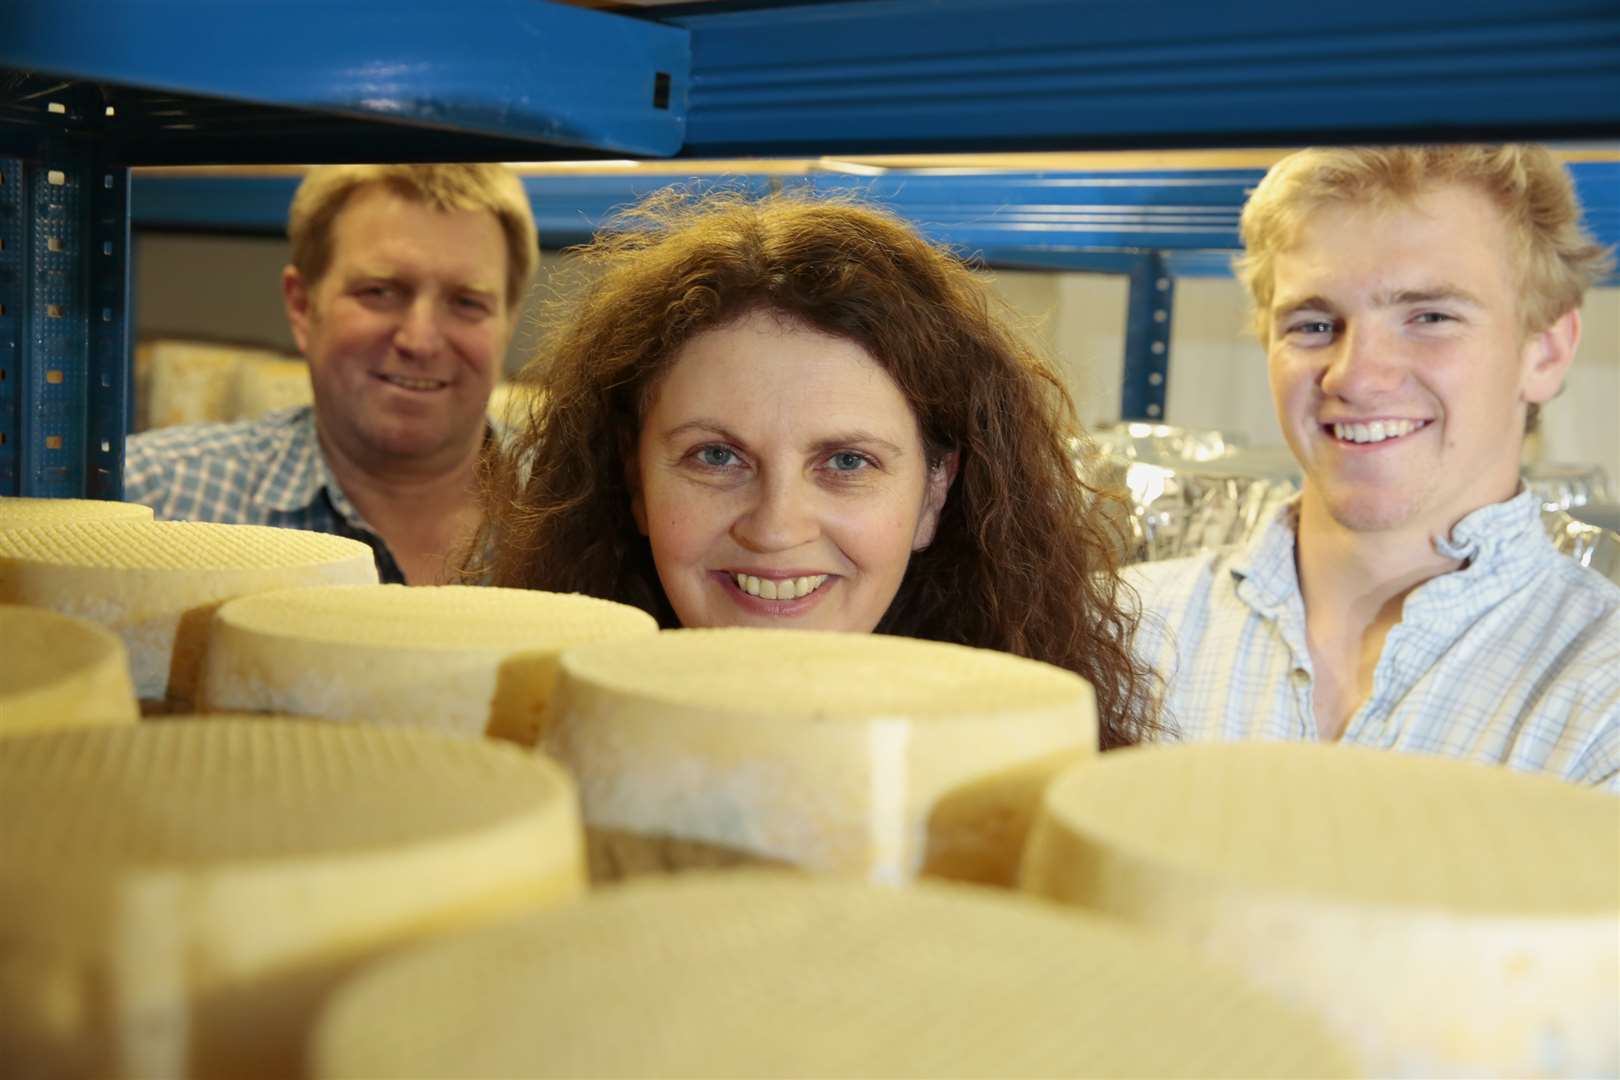 Steve, Karen and Frank Reynolds in their cheese store at Iden Manor Farm in Staplehurst